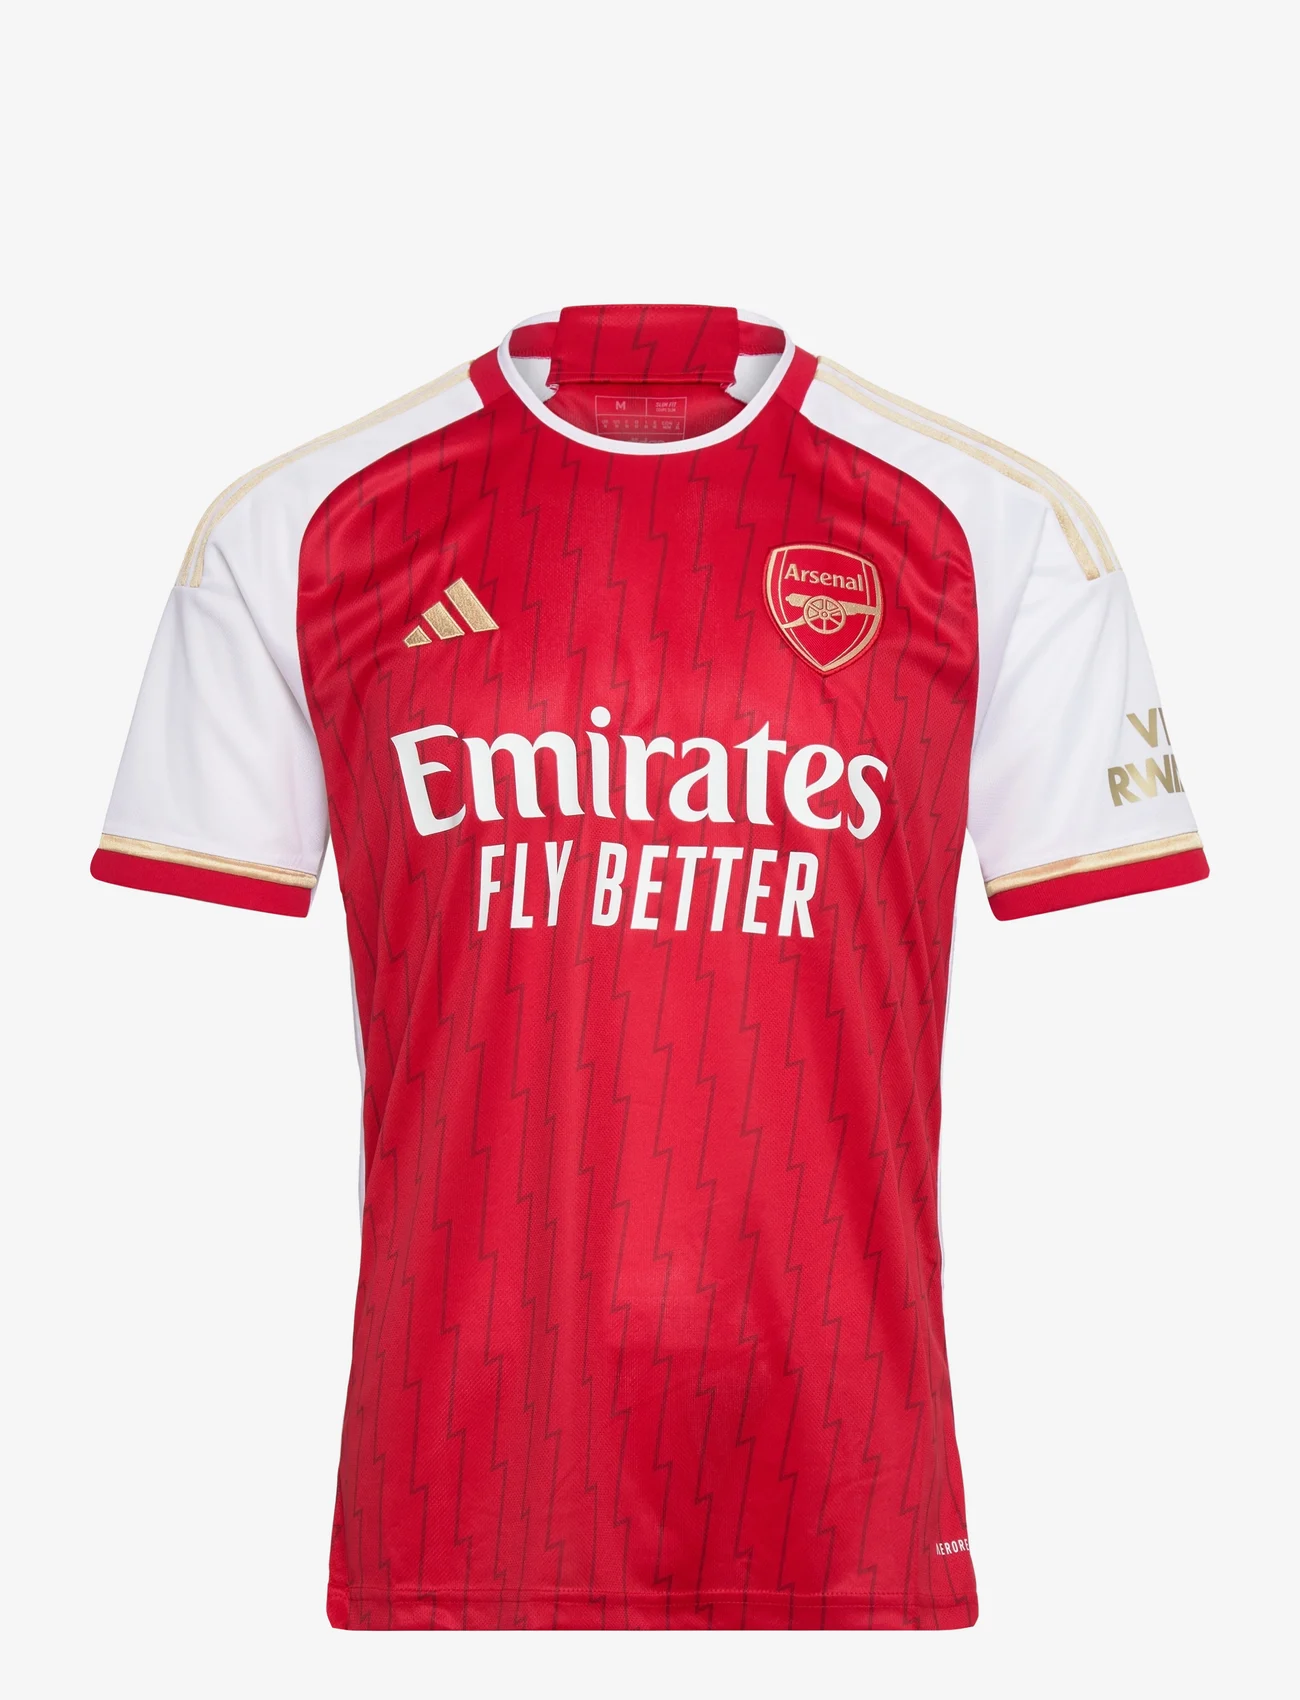 adidas Performance - Arsenal 23/24 Home Jersey - futbolo marškinėliai - betsca/white - 0